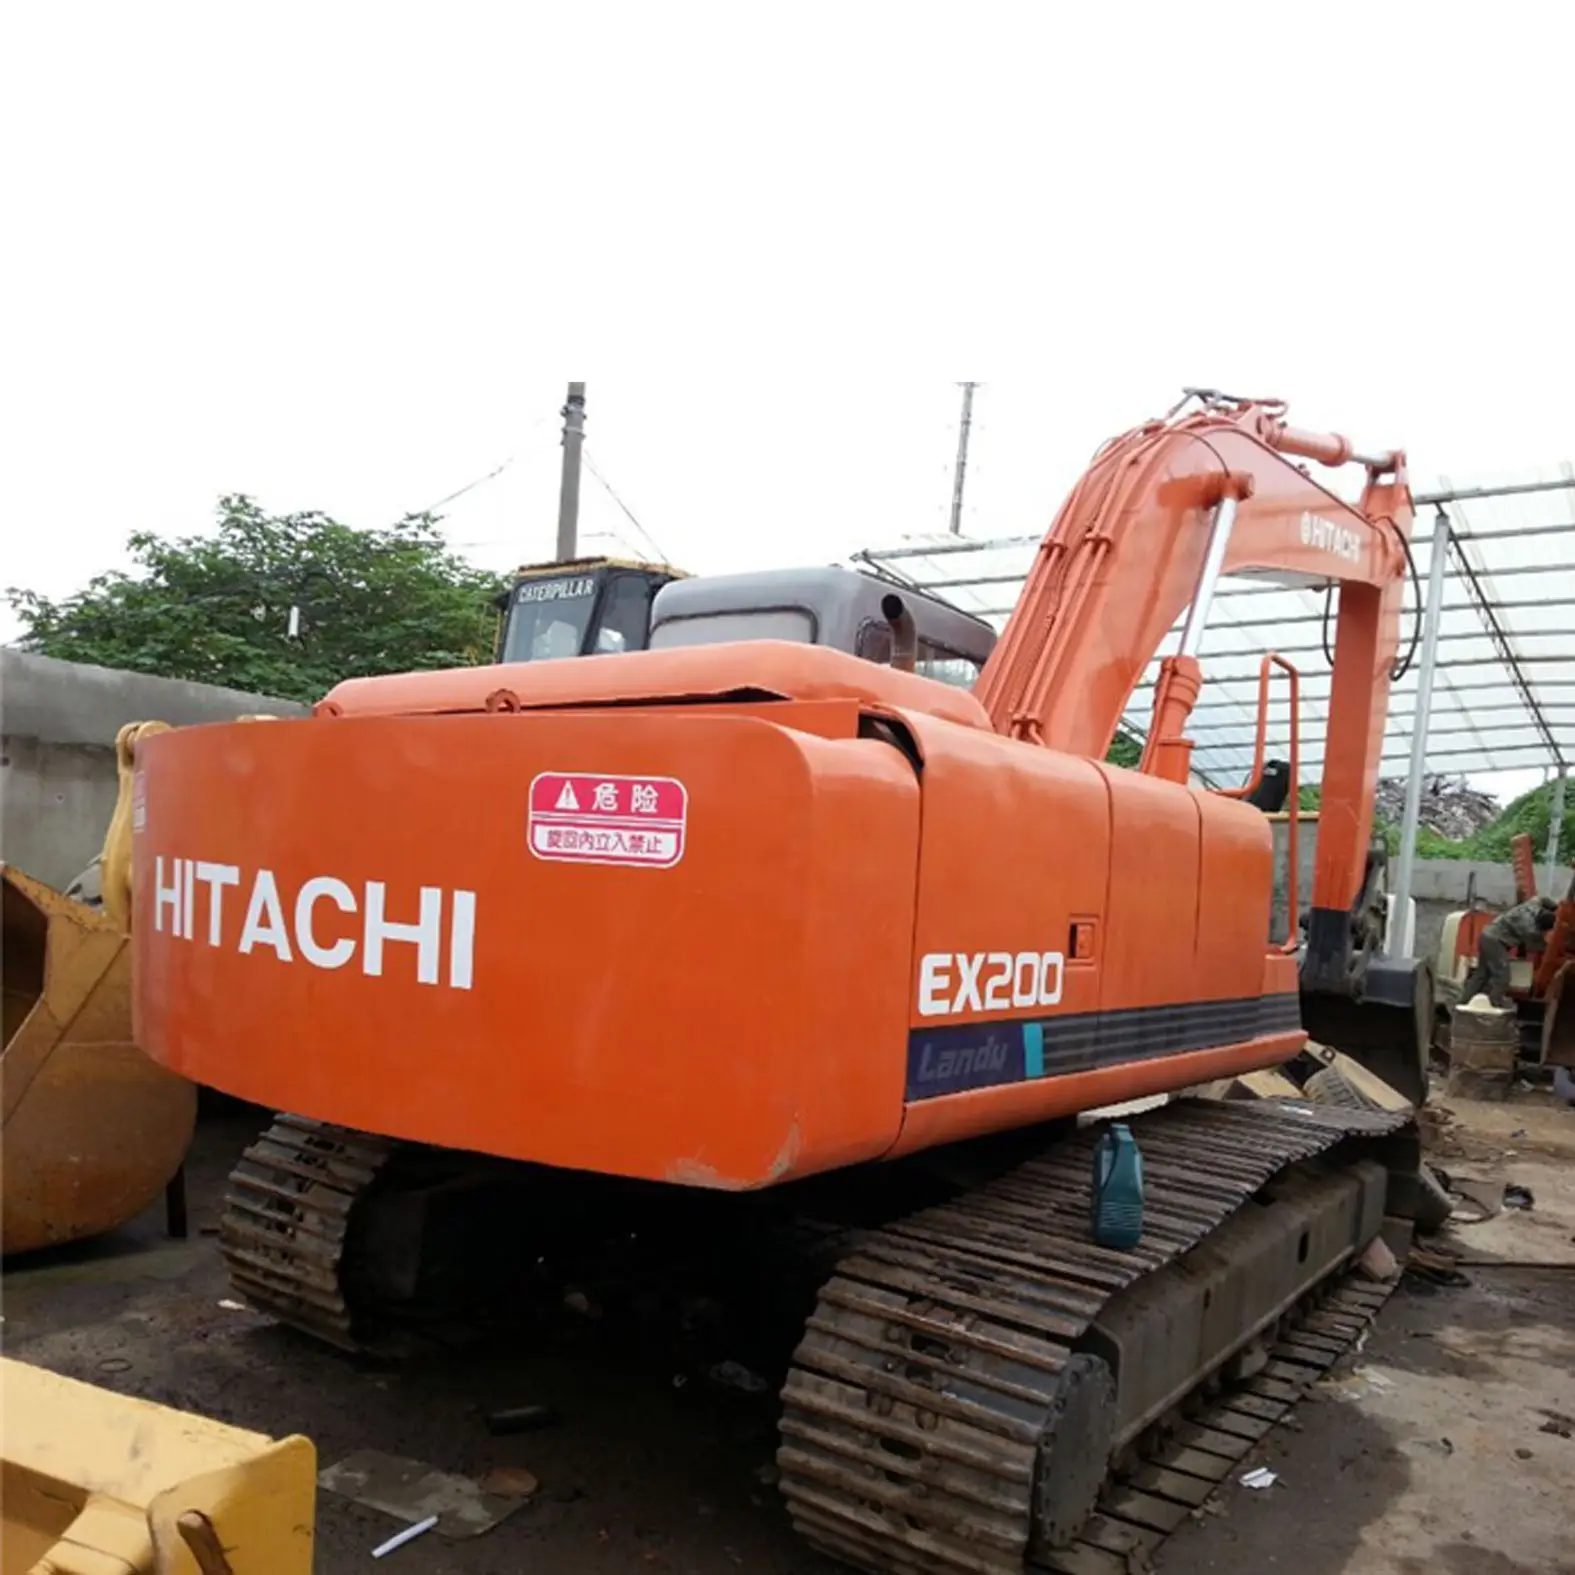 Excavatrice japonaise de 20 tonnes Excavatrice Hitachi EX200 d'occasion à bas prix Excavatrice Hitachi EX200 ZX200 d'occasion en bon état